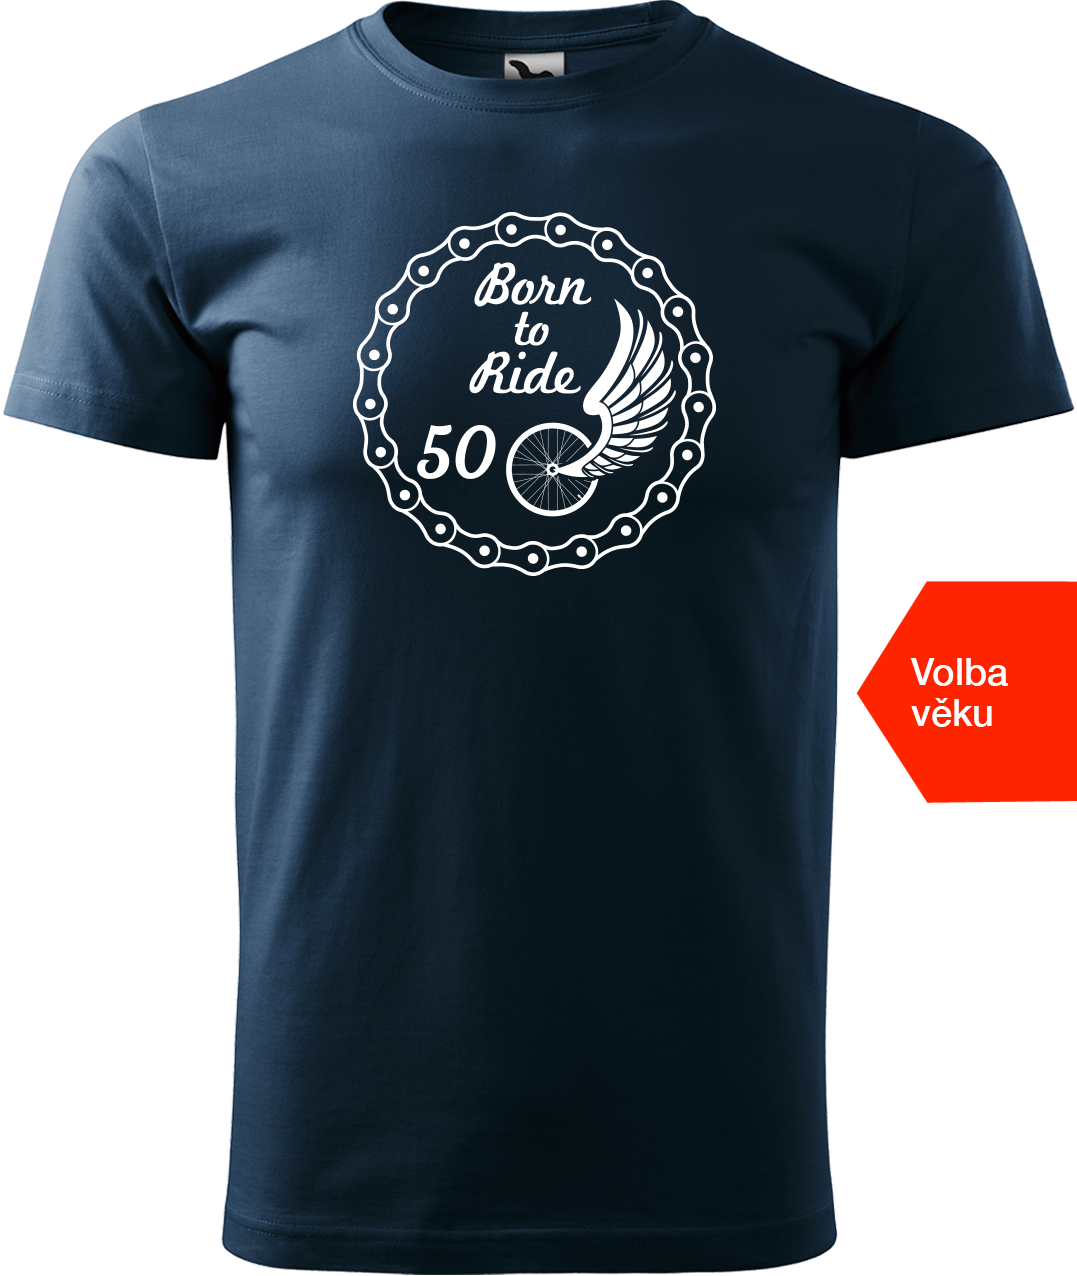 Pánské tričko pro cyklistu s věkem - Born to Ride (wings) Velikost: XL, Barva: Námořní modrá (02)